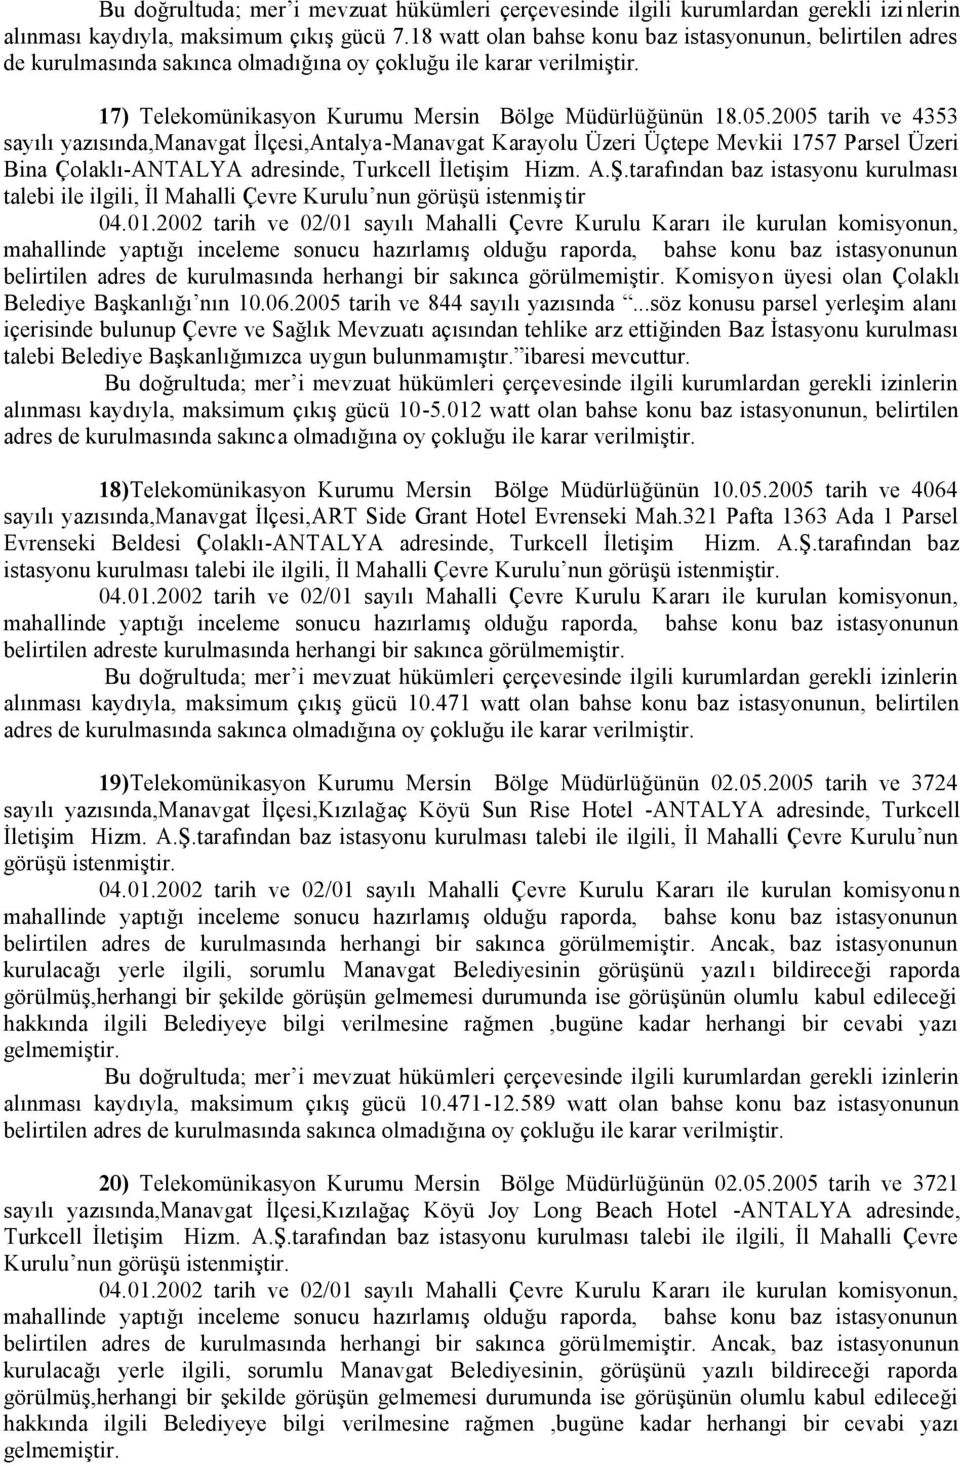 2005 tarih ve 4353 sayılı yazısında,manavgat İlçesi,Antalya-Manavgat Karayolu Üzeri Üçtepe Mevkii 1757 Parsel Üzeri Bina Çolaklı-ANTALYA adresinde, Turkcell İletişim Hizm. A.Ş.